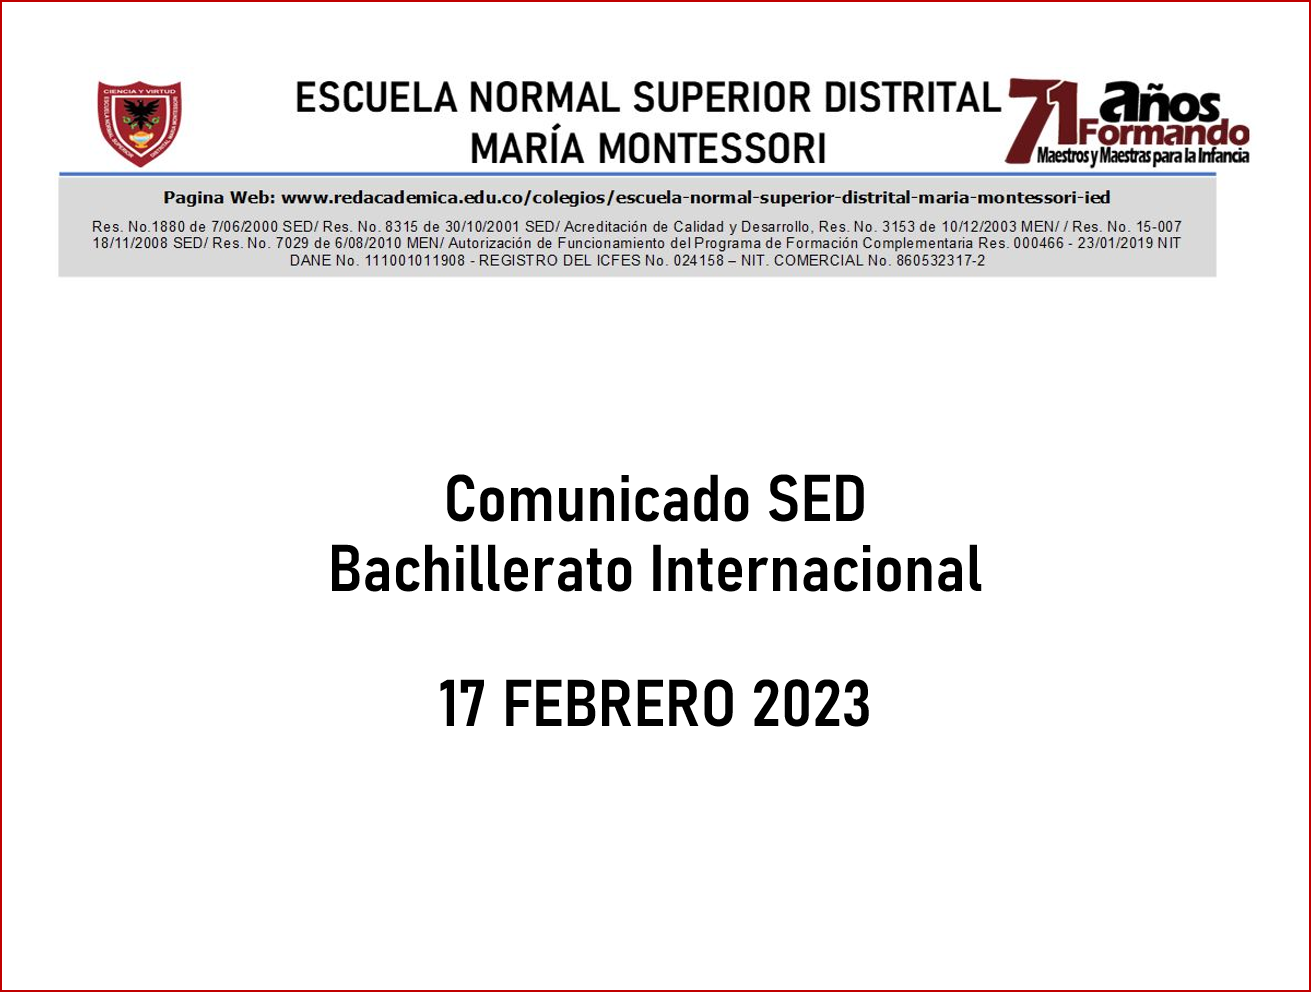 Comunicado SED - Bachillerato Internacional